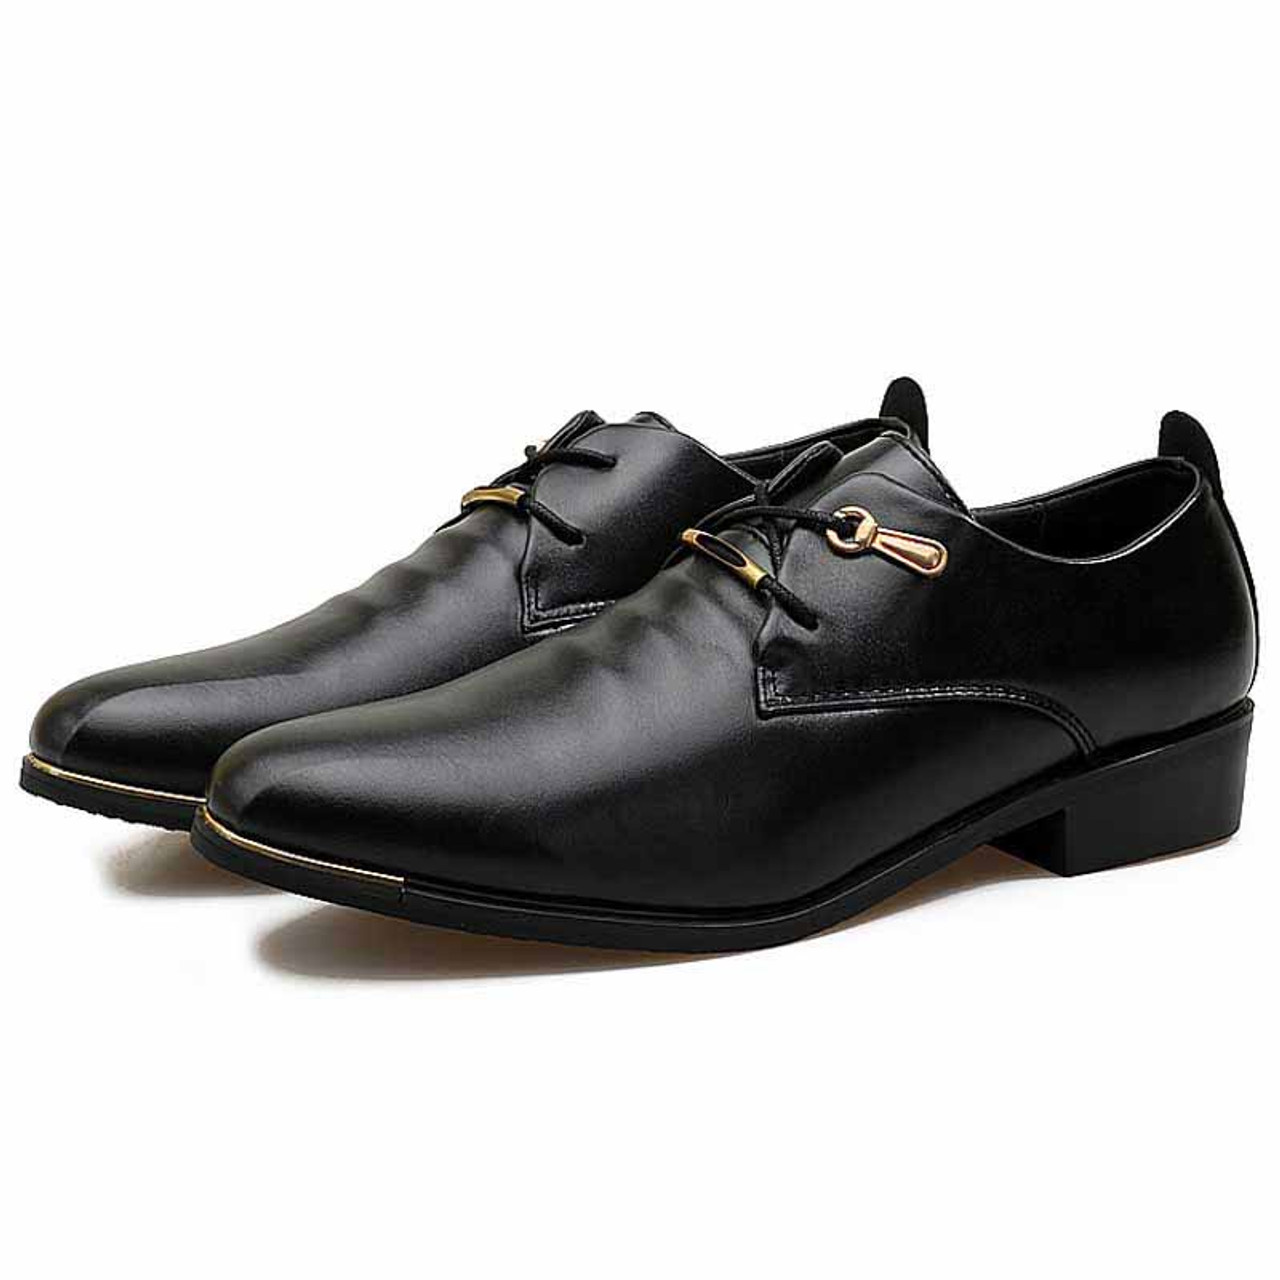 Black pleated lace up dress shoe | Mens dress shoes online 1364MS